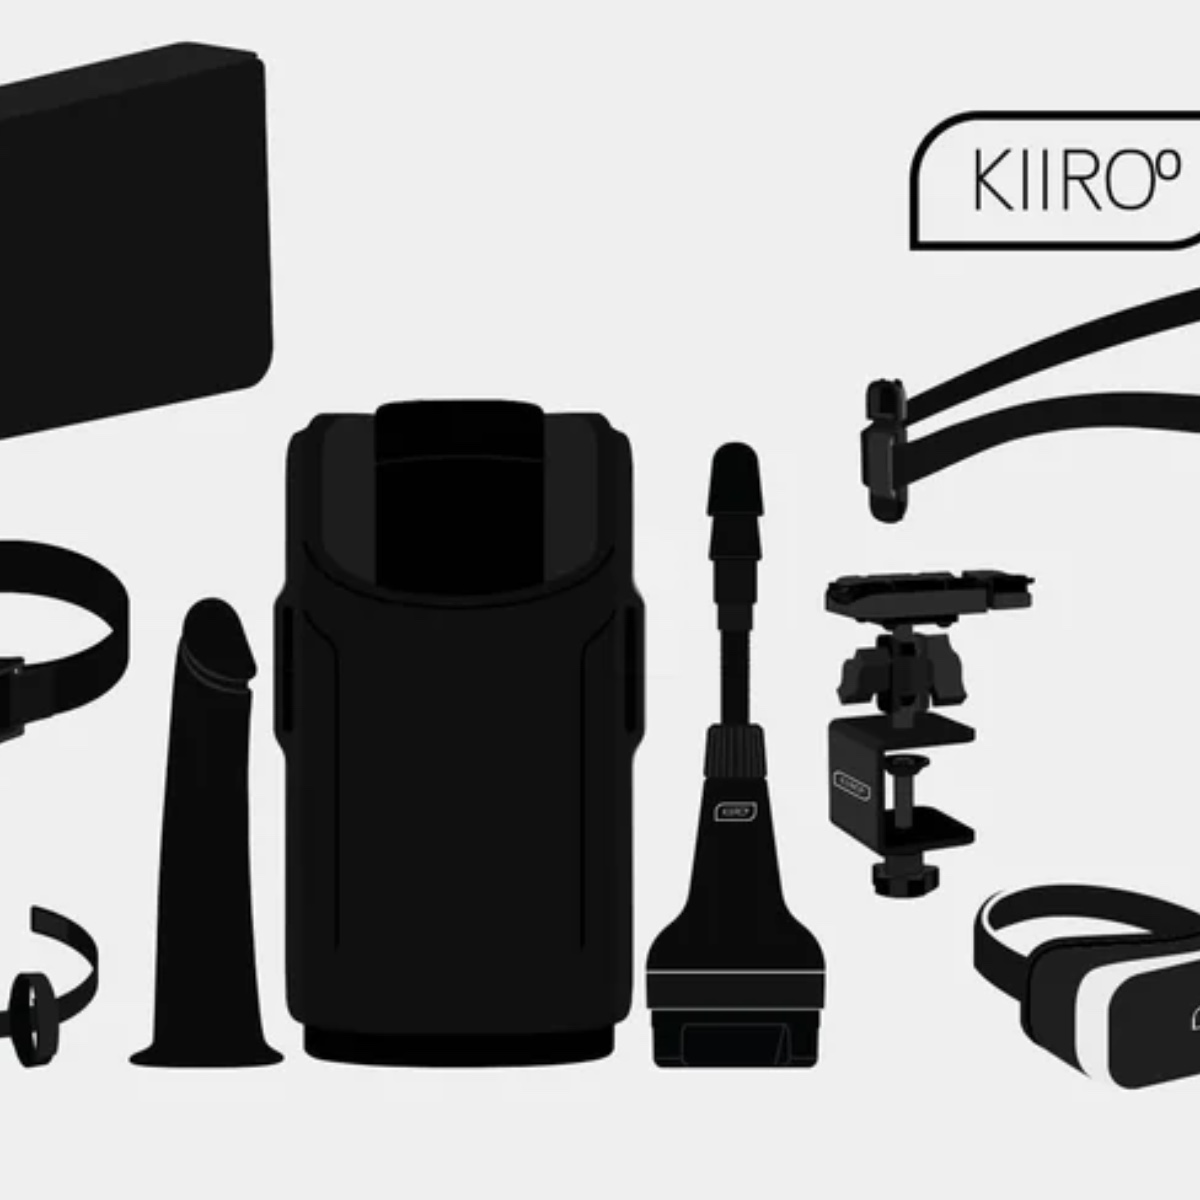 Kiiroo Keon Accessories